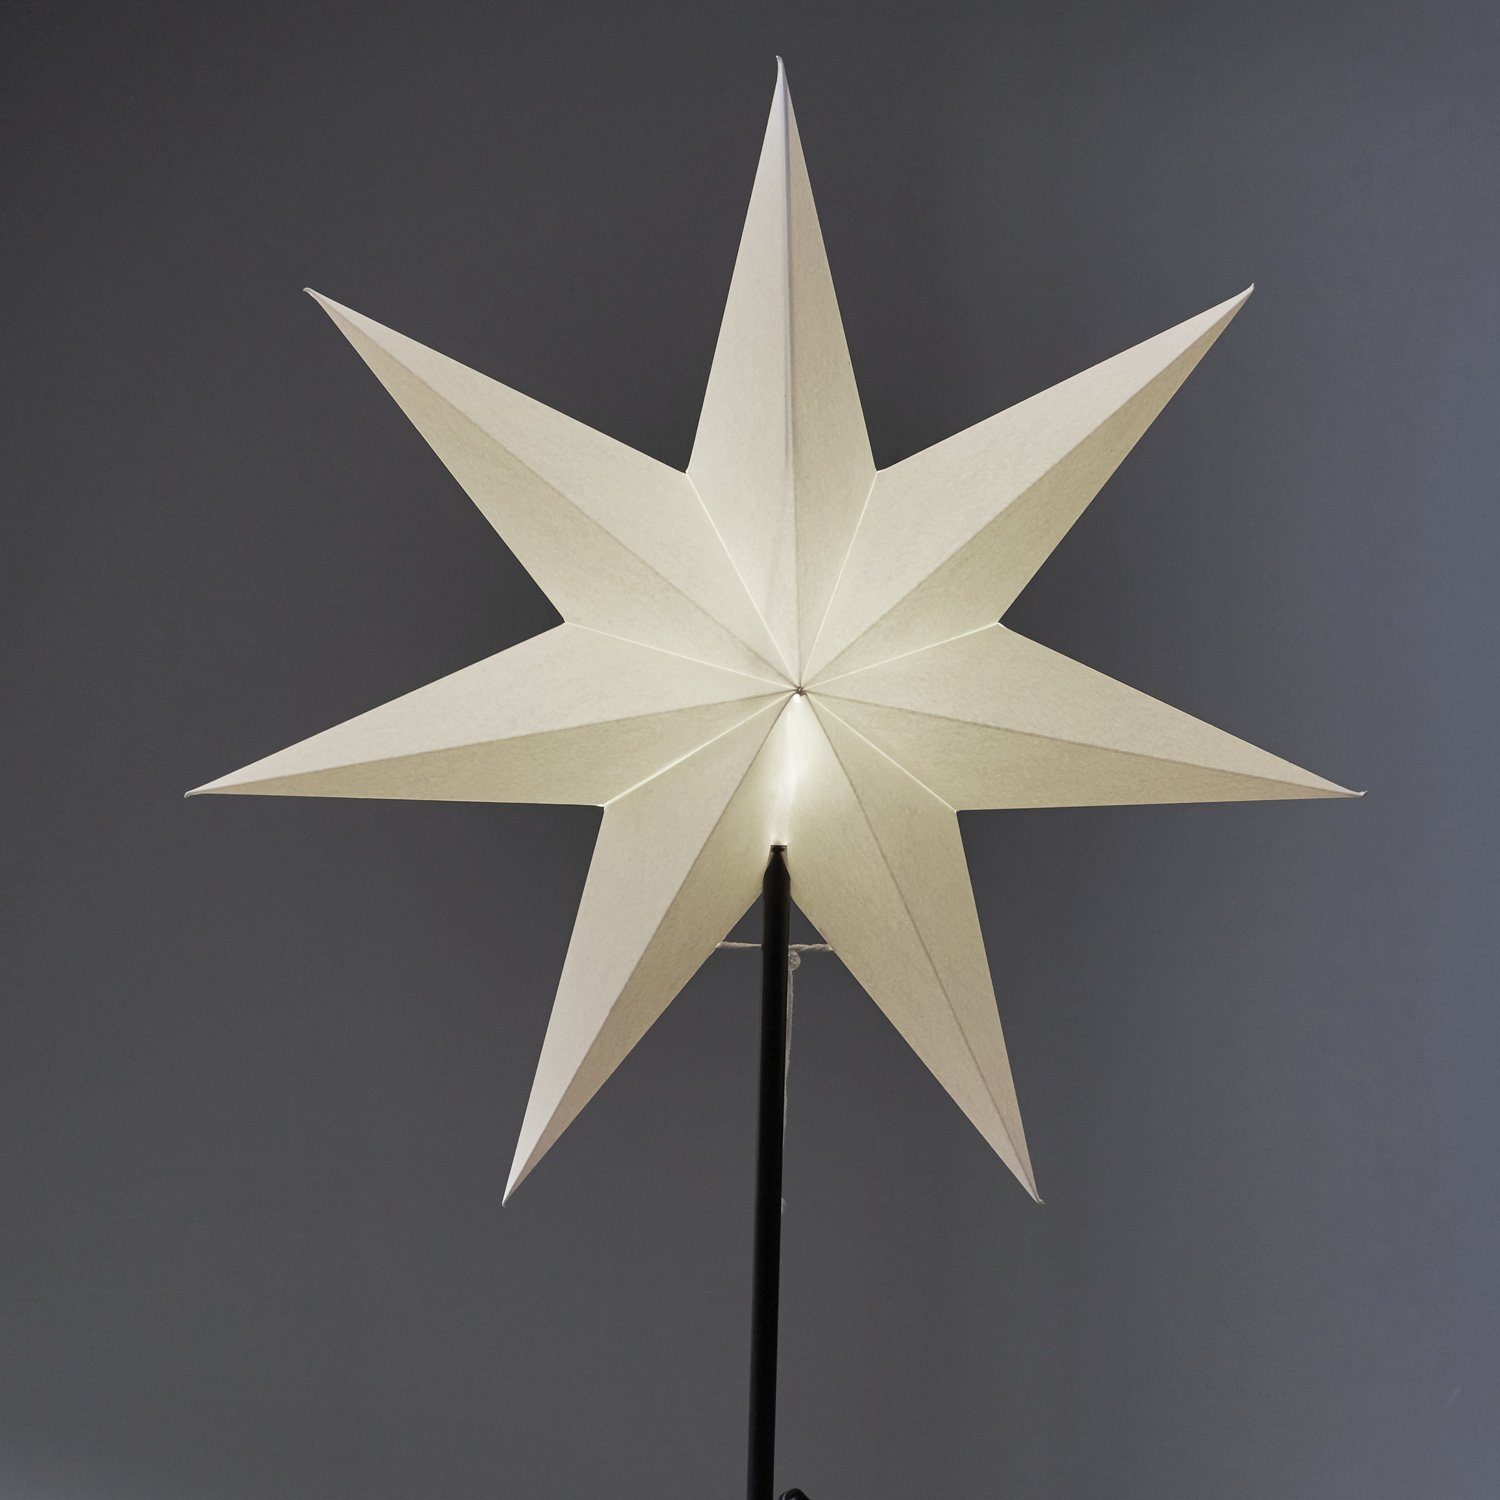 55cm E14 inkl. stehend Papierstern LED Stern Weihnachtsstern weiß TRADING Kabel STAR 7-zackig